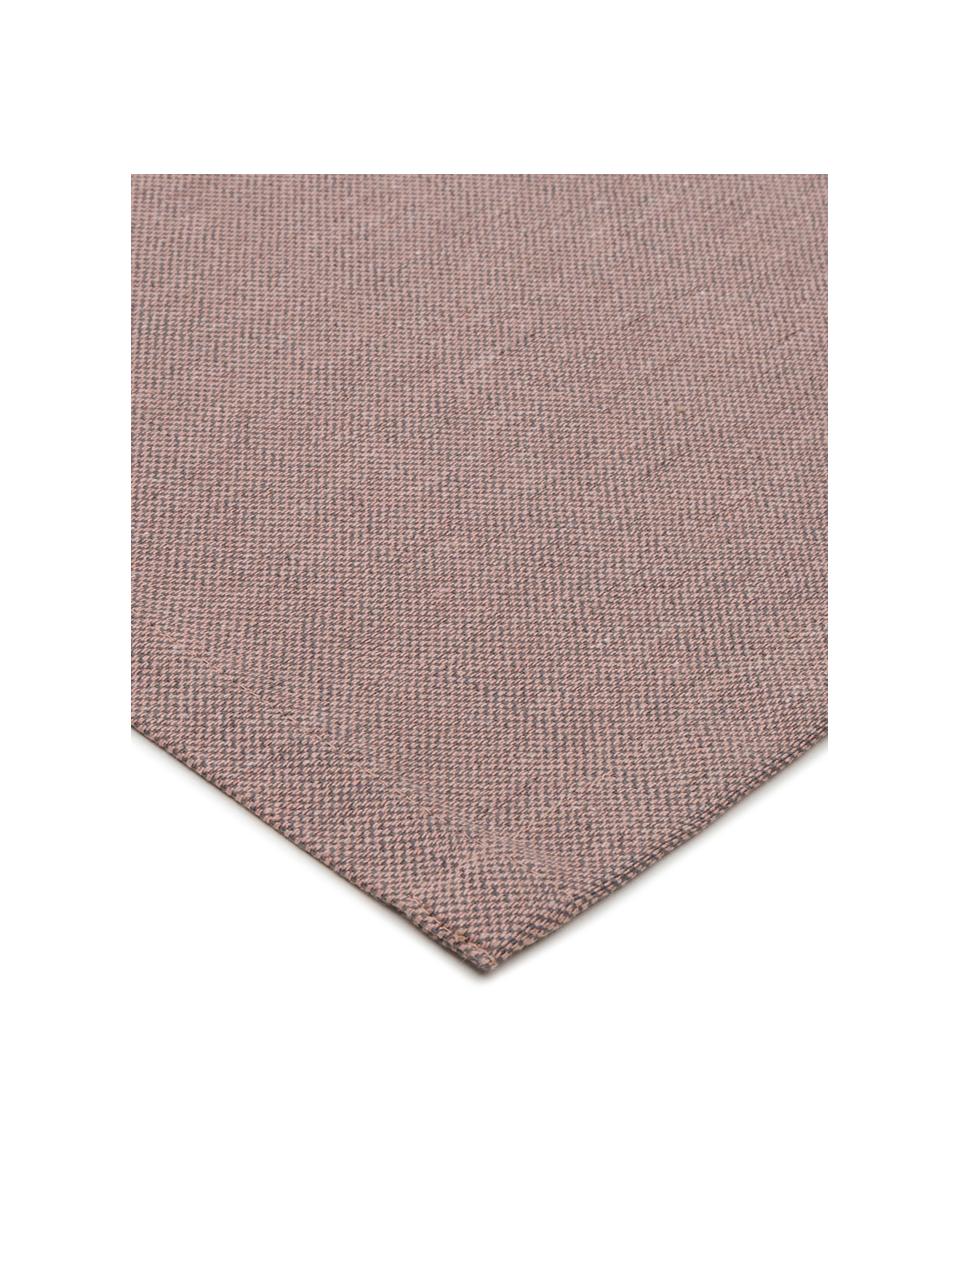 Tischläufer Riva aus Baumwollgemisch in Mauve, 55% Baumwolle, 45% Polyester, Mauve, B 40 x L 150 cm